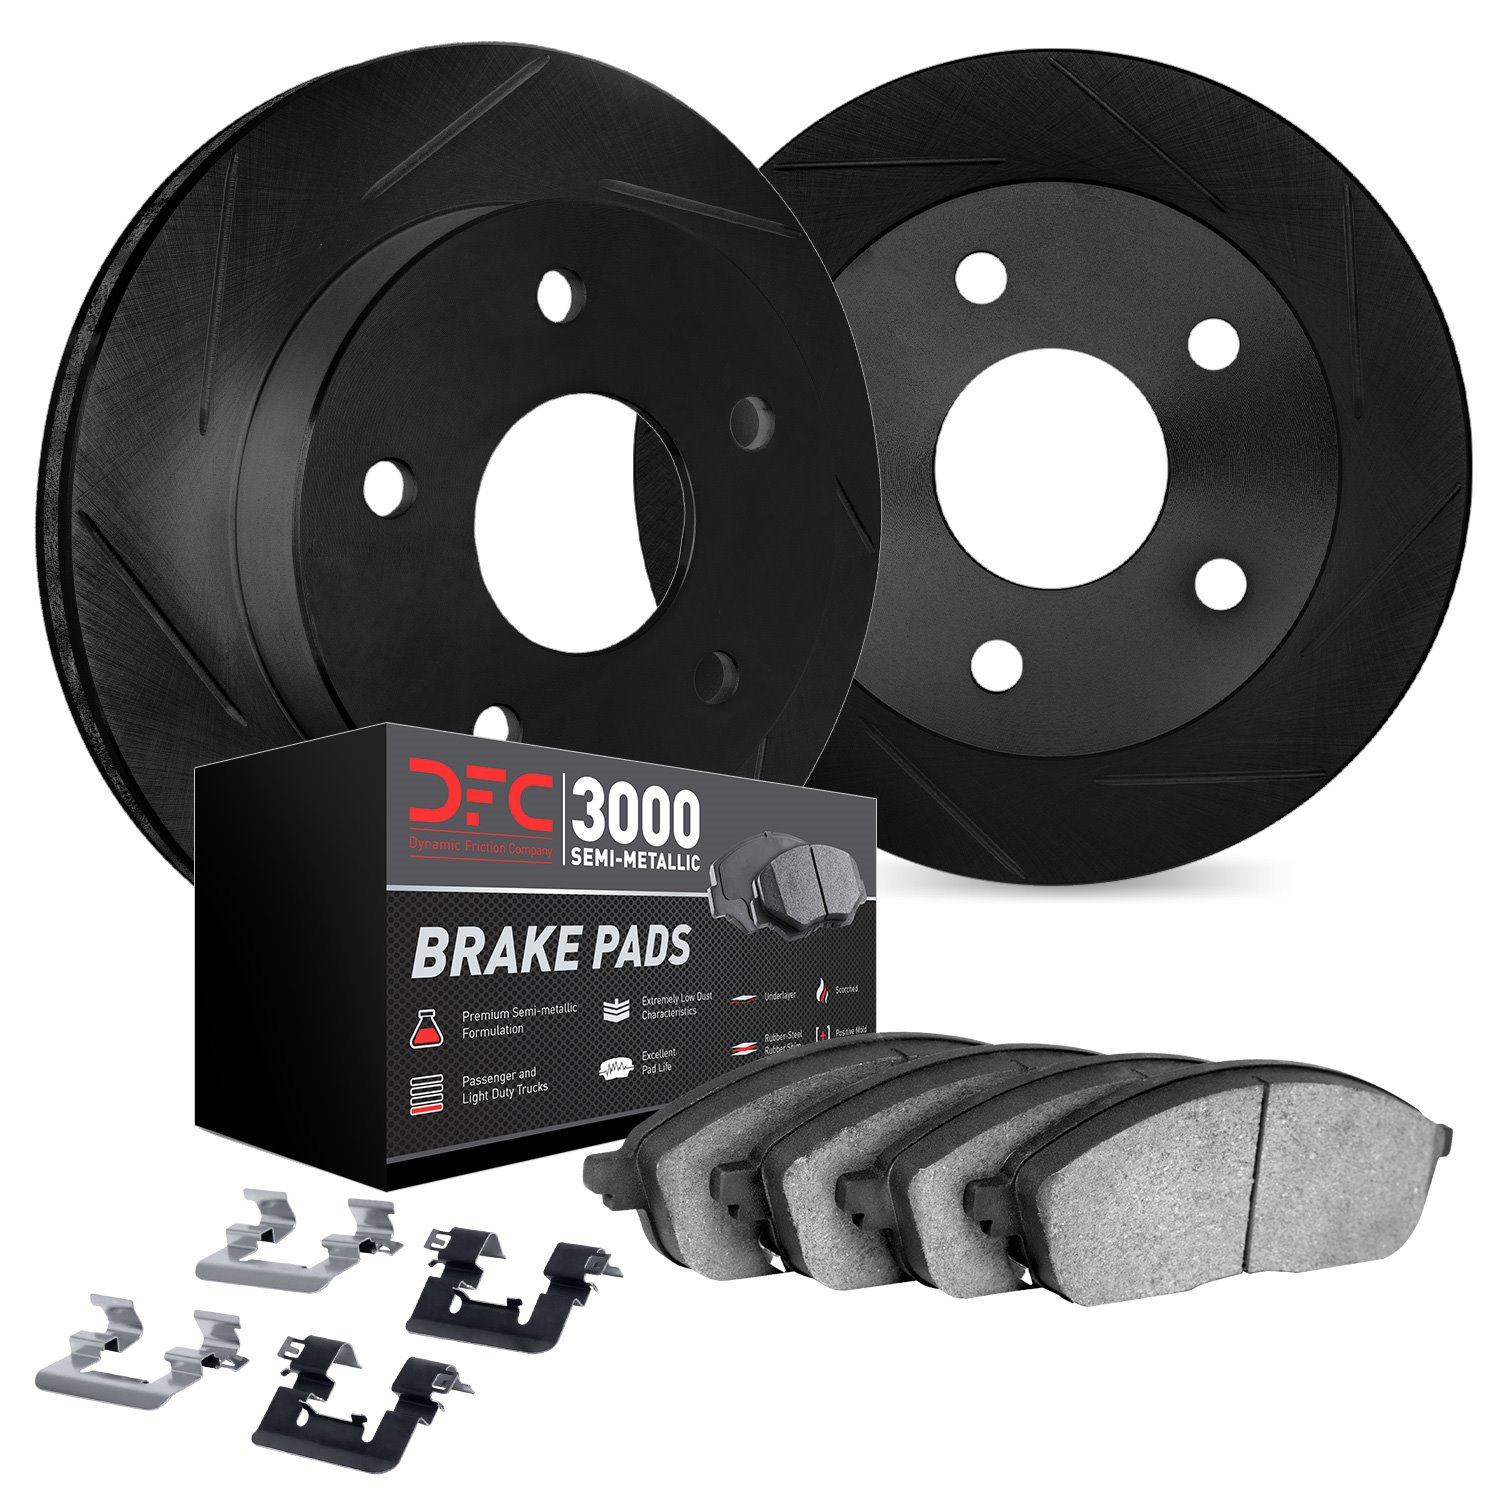 3112-63119 Slotted Brake Rotors with 3000-Series Semi-Metallic Brake Pads Kit & Hardware [Black], 2009-2015 Mercedes-Benz, Posit